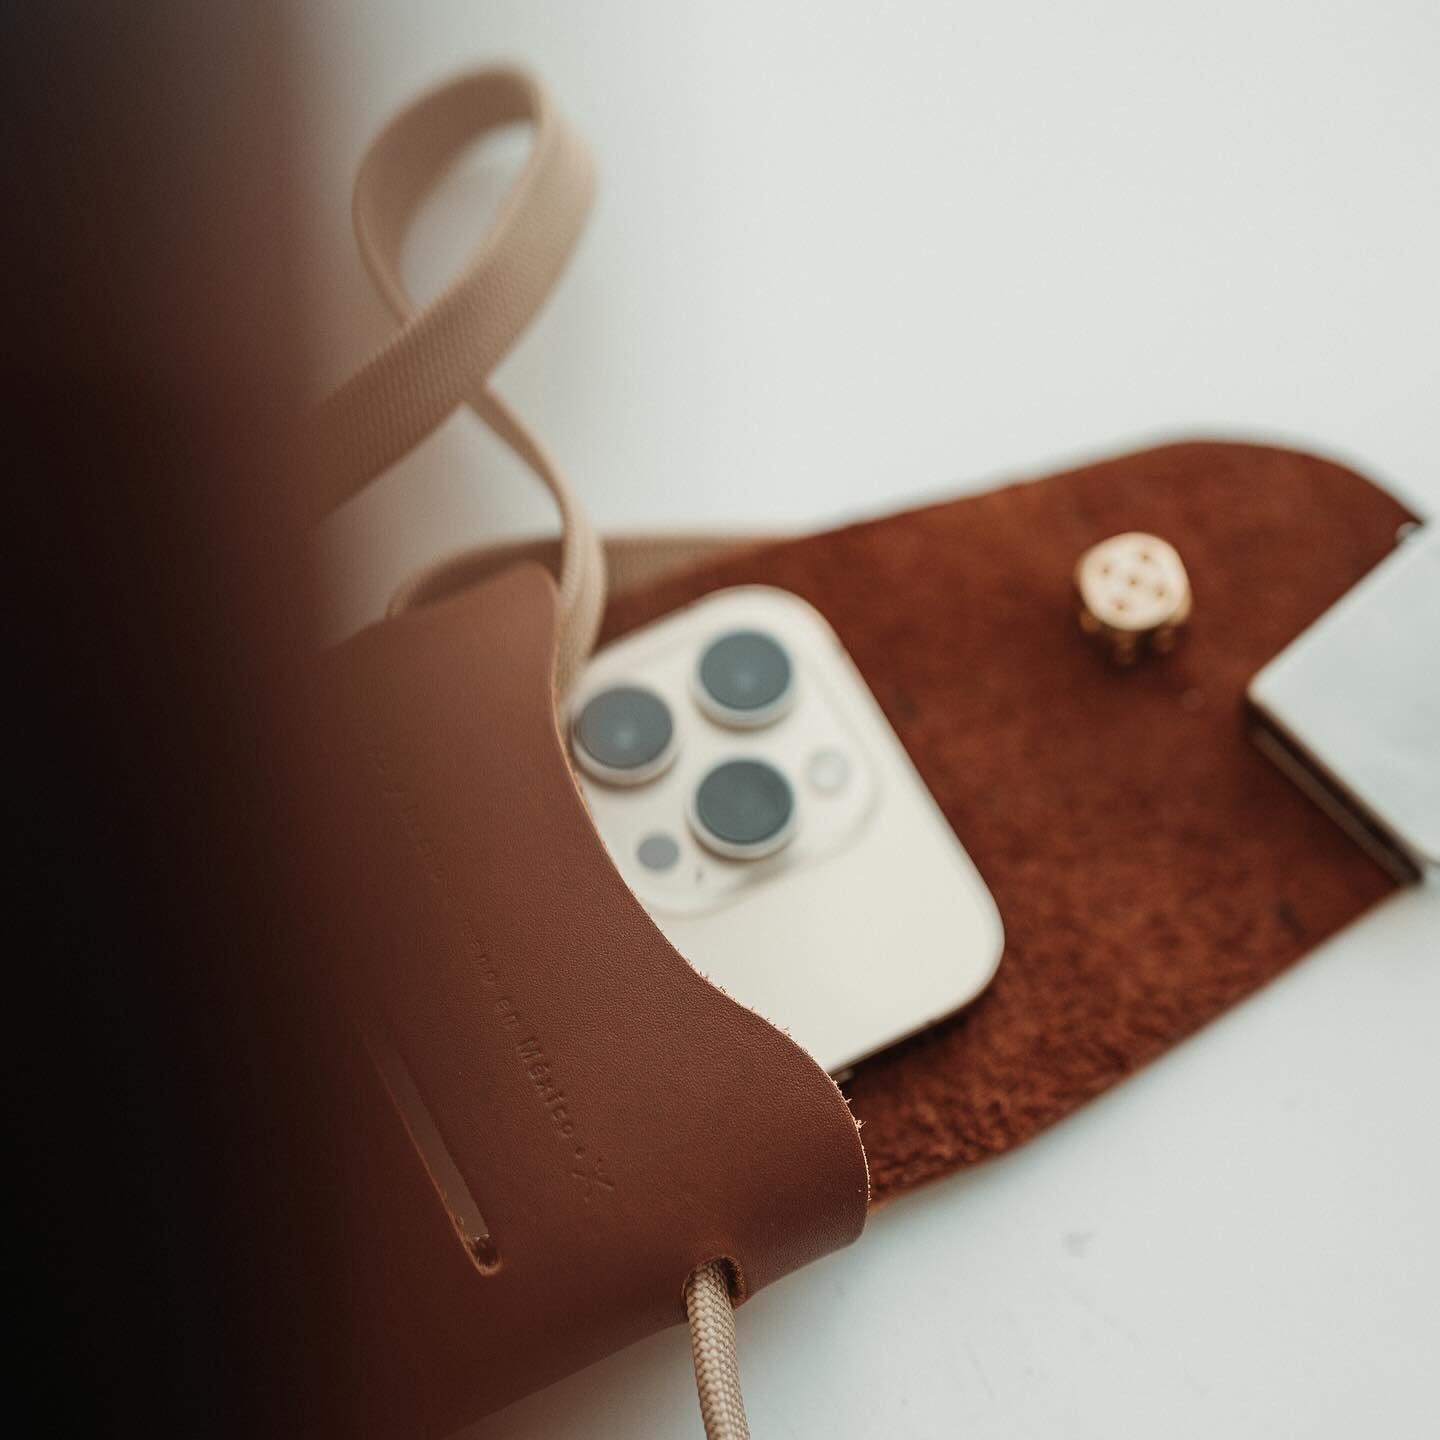 Un pequeño bolso diseñado de la formas más mínima, modular y utilitaria que fuimos capaces de resolver.

Conócelo a partir de mañana en @hoteldemetria 

11-05-2024

#loesencialmx #productlaunch #phonebag